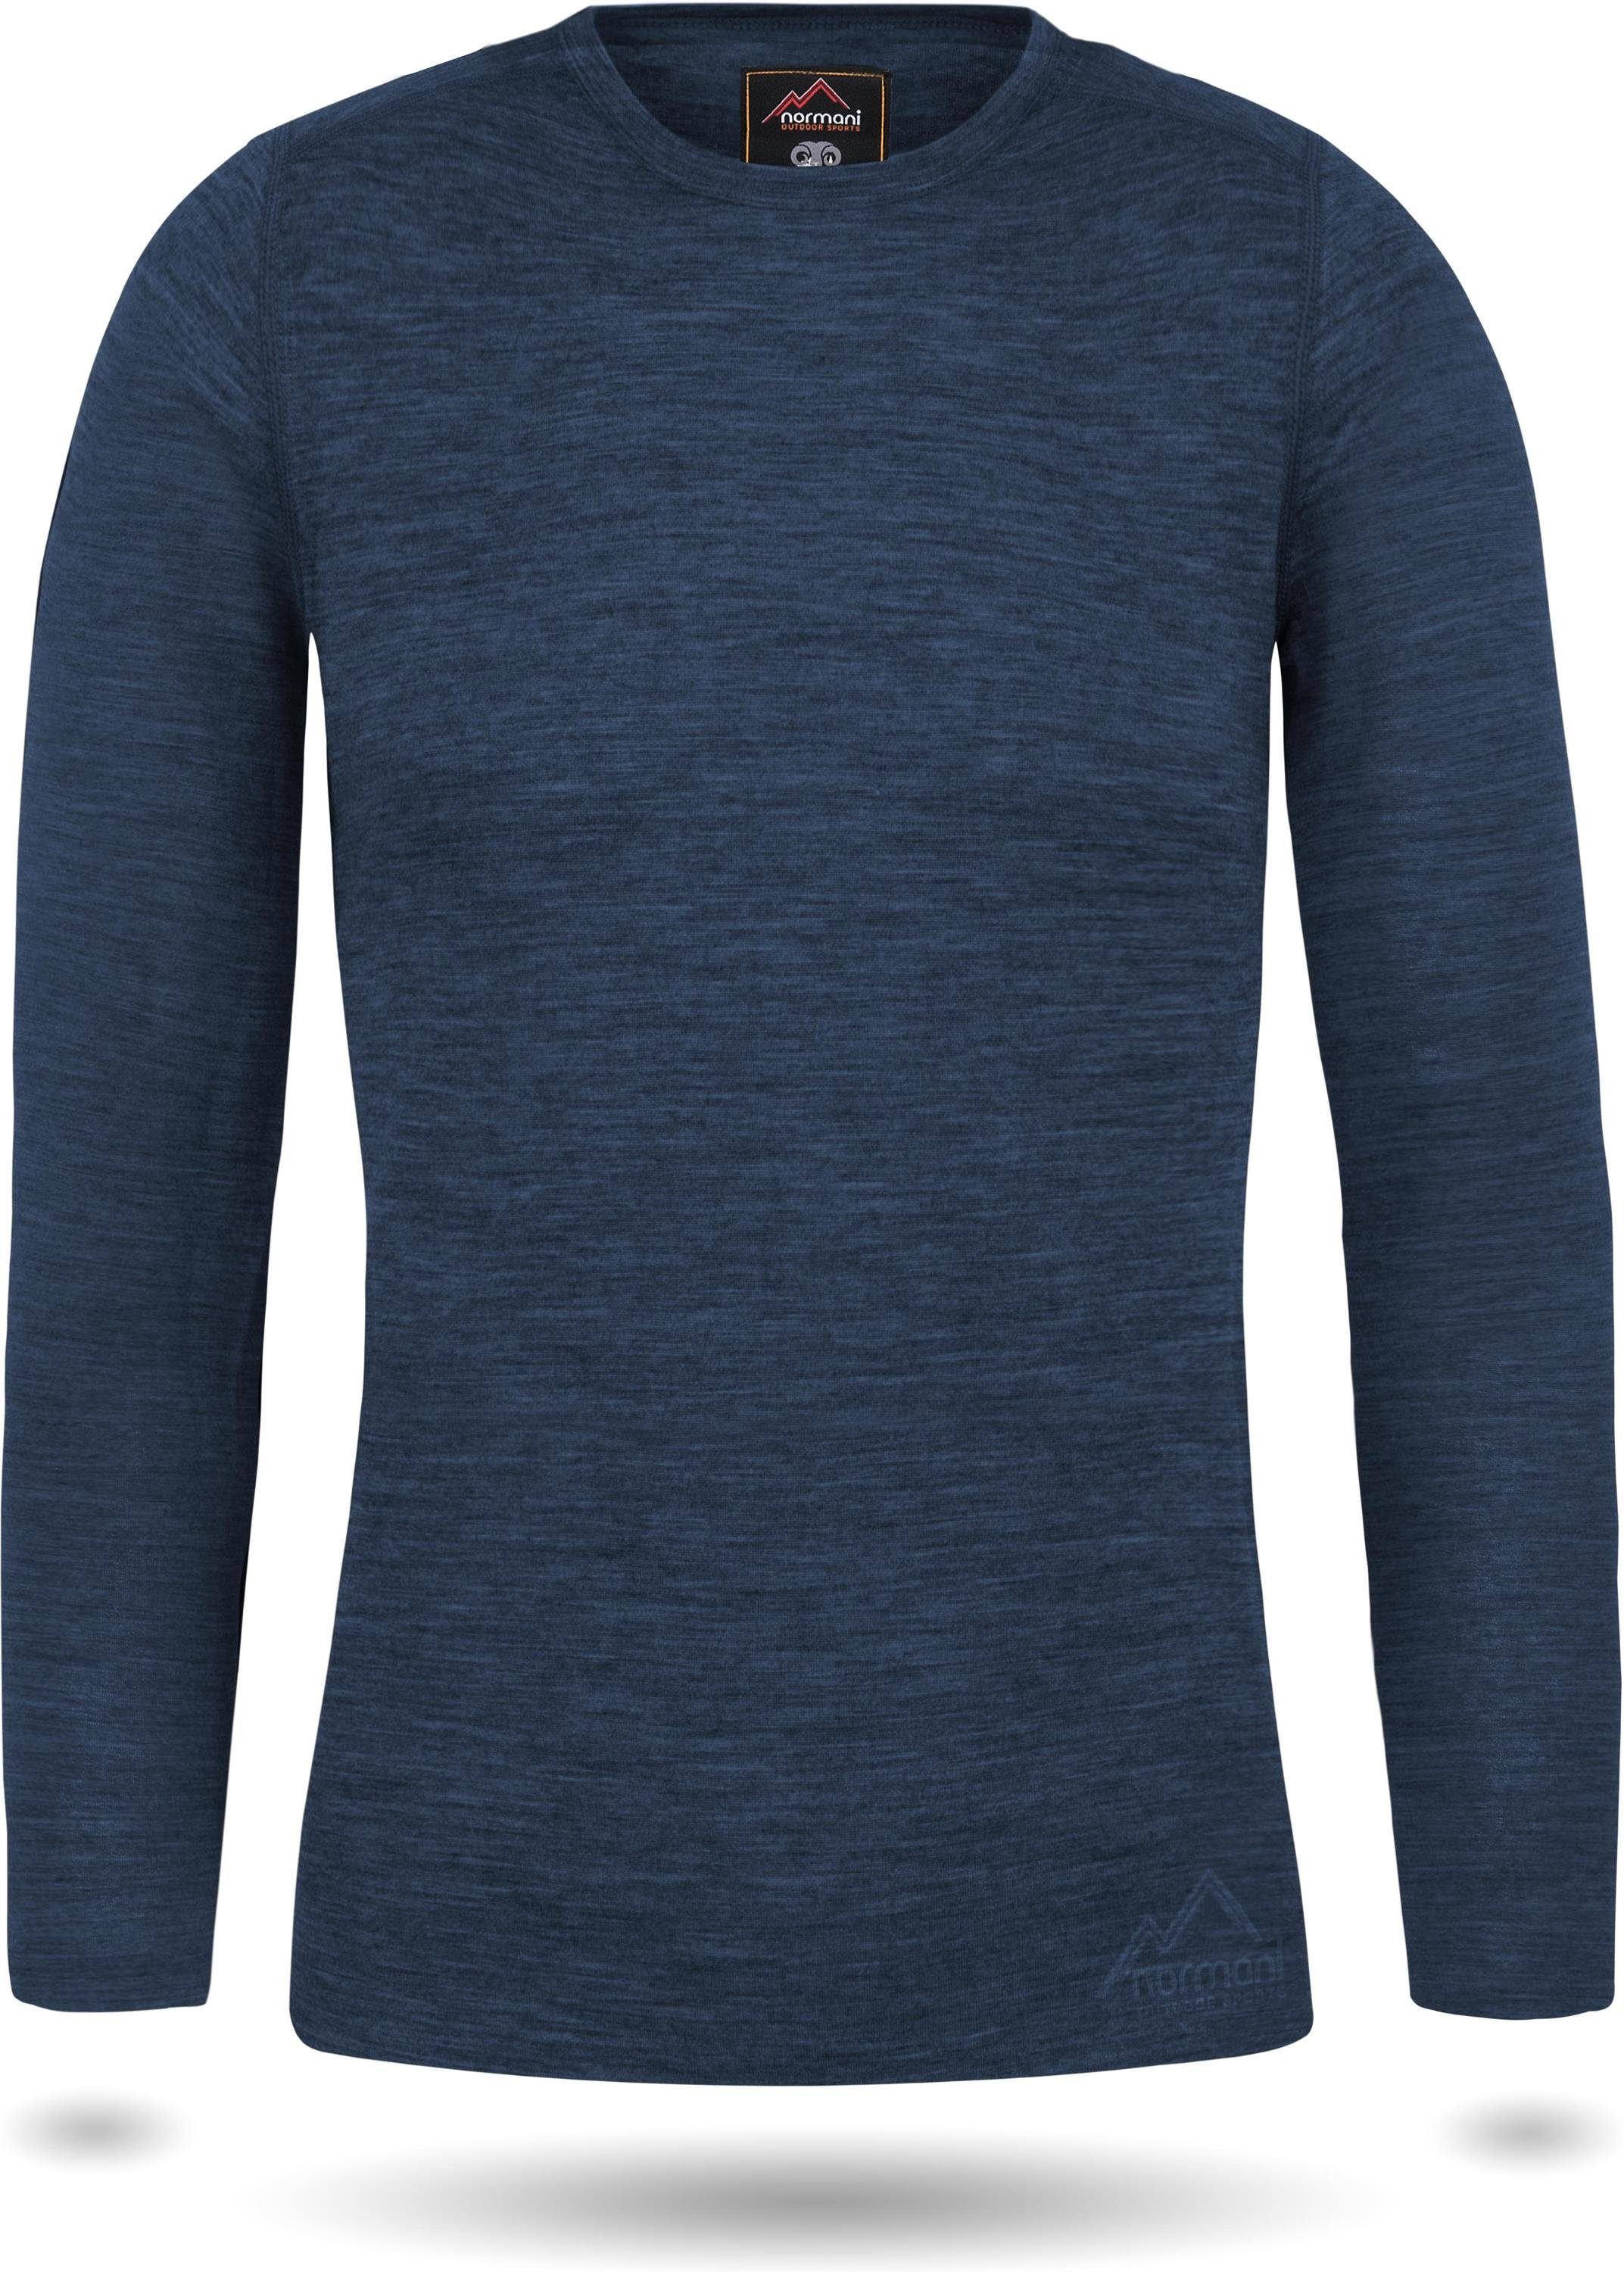 normani Langarmshirt »Damen Merino Langarm-Shirt Mandurah« Ski-Unterwäsche  Rundhals Merino Pullover Unterhemd - 100 % Merinowolle online kaufen | OTTO